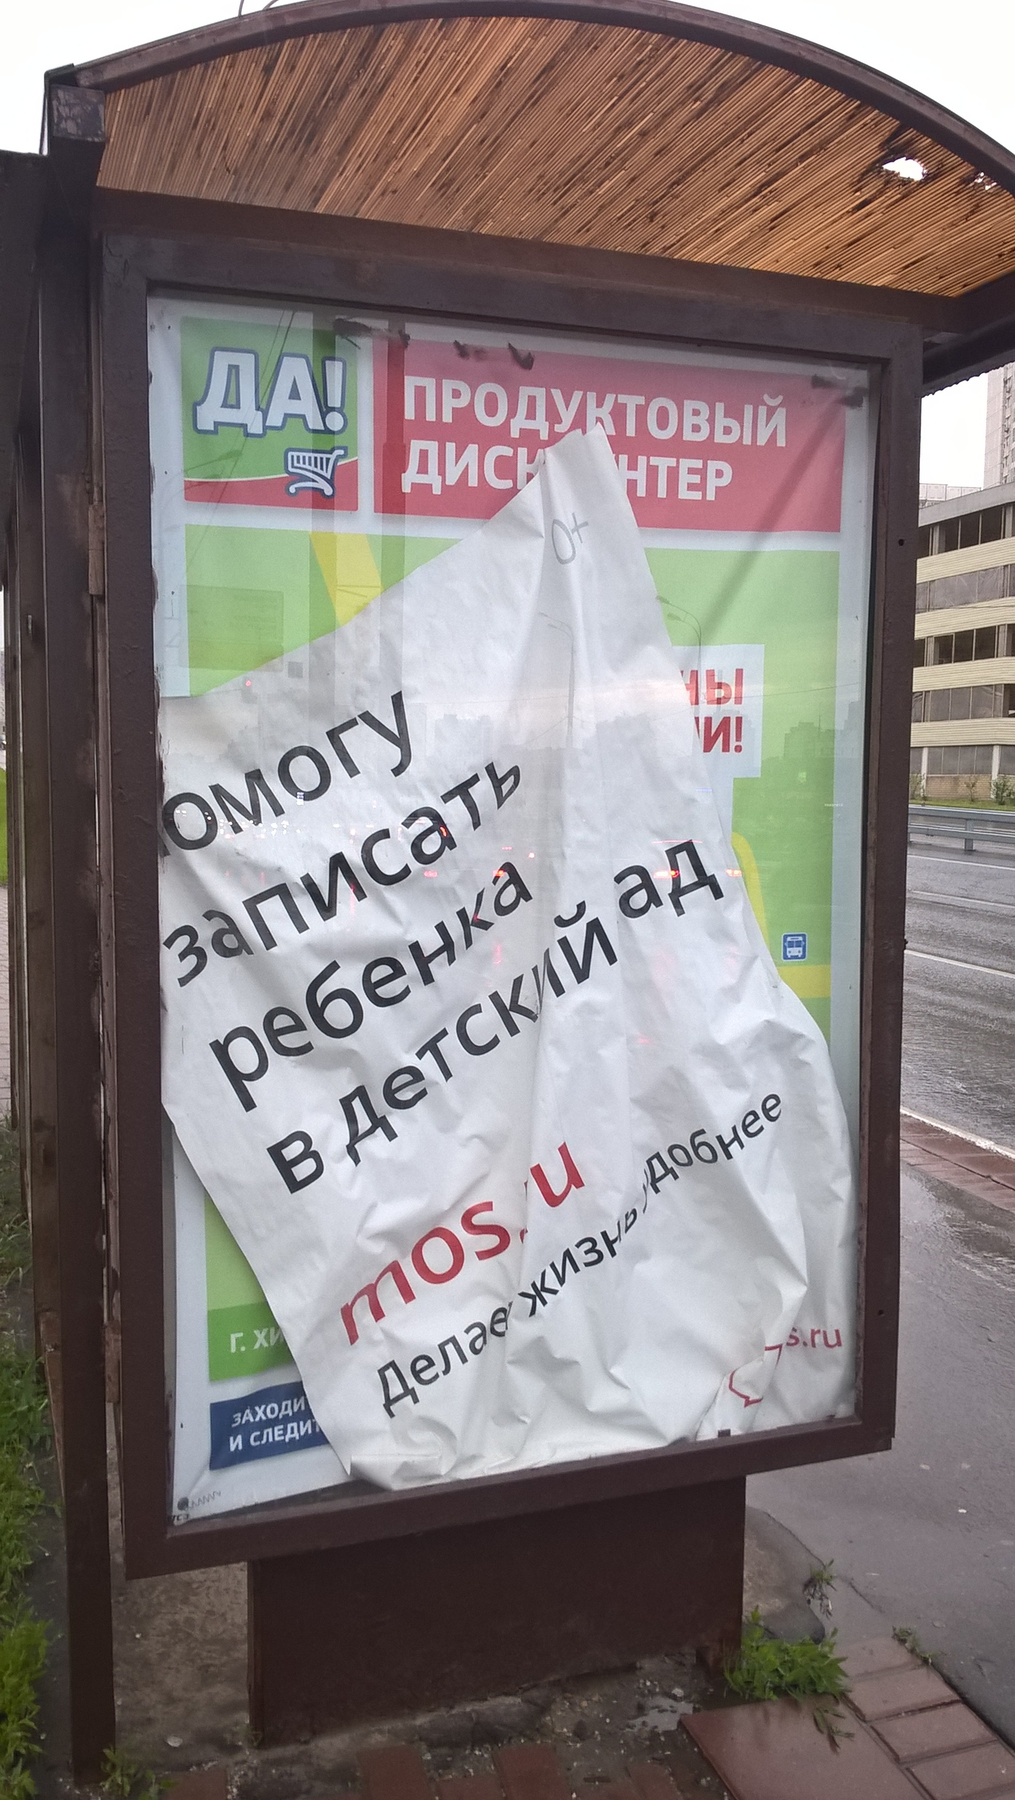 ДетсАд дети природа улица реклама остановка автобус маршрутка Москва ад детский сад